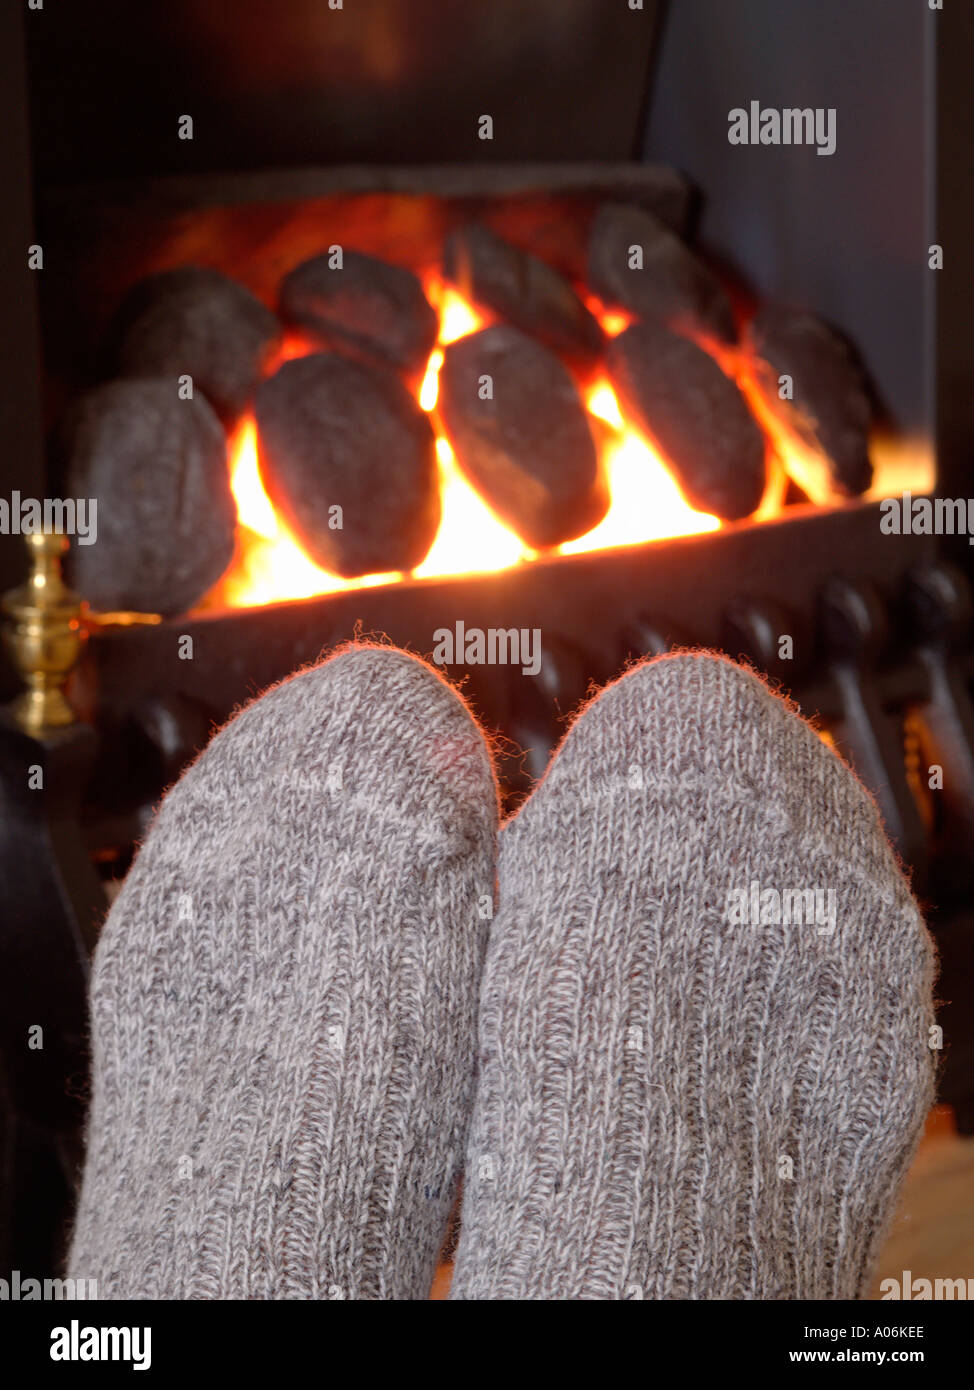 WARME FÜSSE in kuscheligen wolligen Socken, die sich vor einem echten Flammenfeuer im Wohnzimmer in einem Kamin erwärmen. England Großbritannien Stockfoto